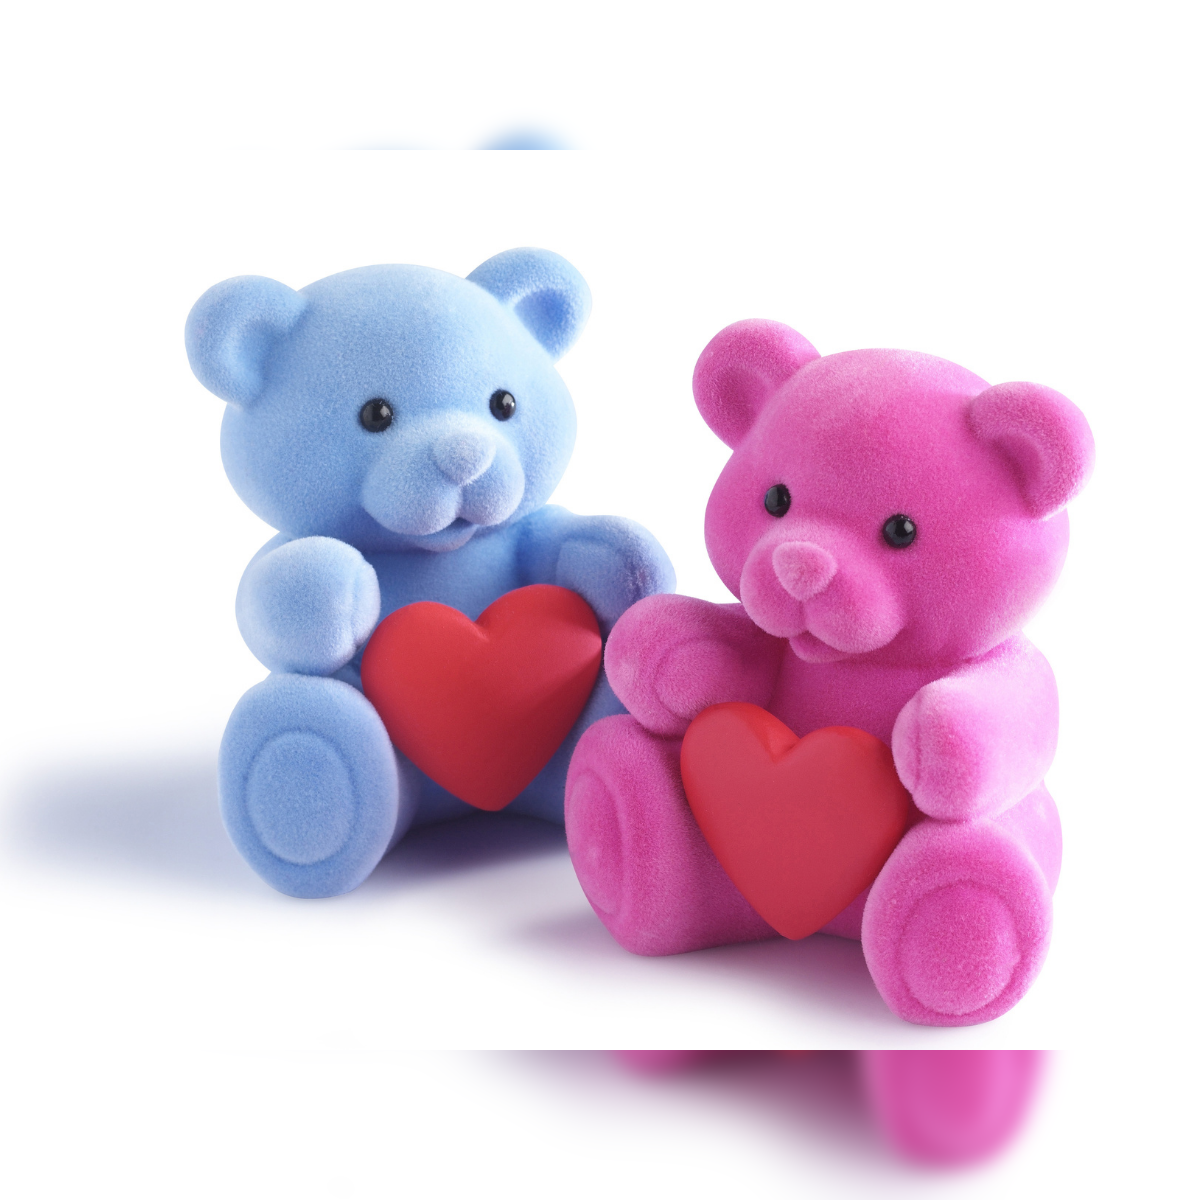 Build A Bear Pink Doodle Undies